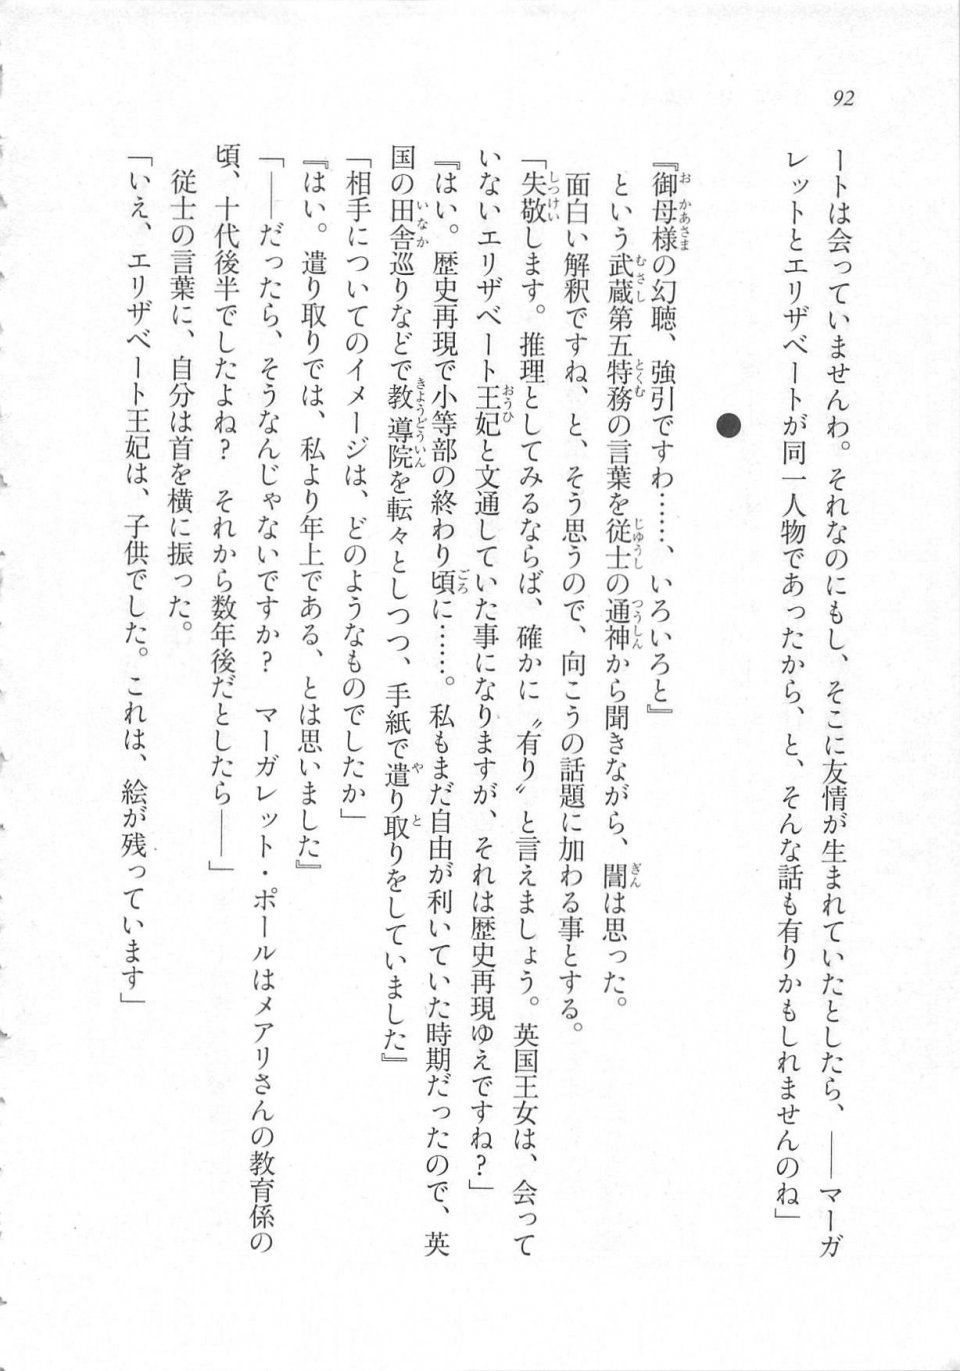 Kyoukai Senjou no Horizon LN Sidestory Vol 3 - Photo #96